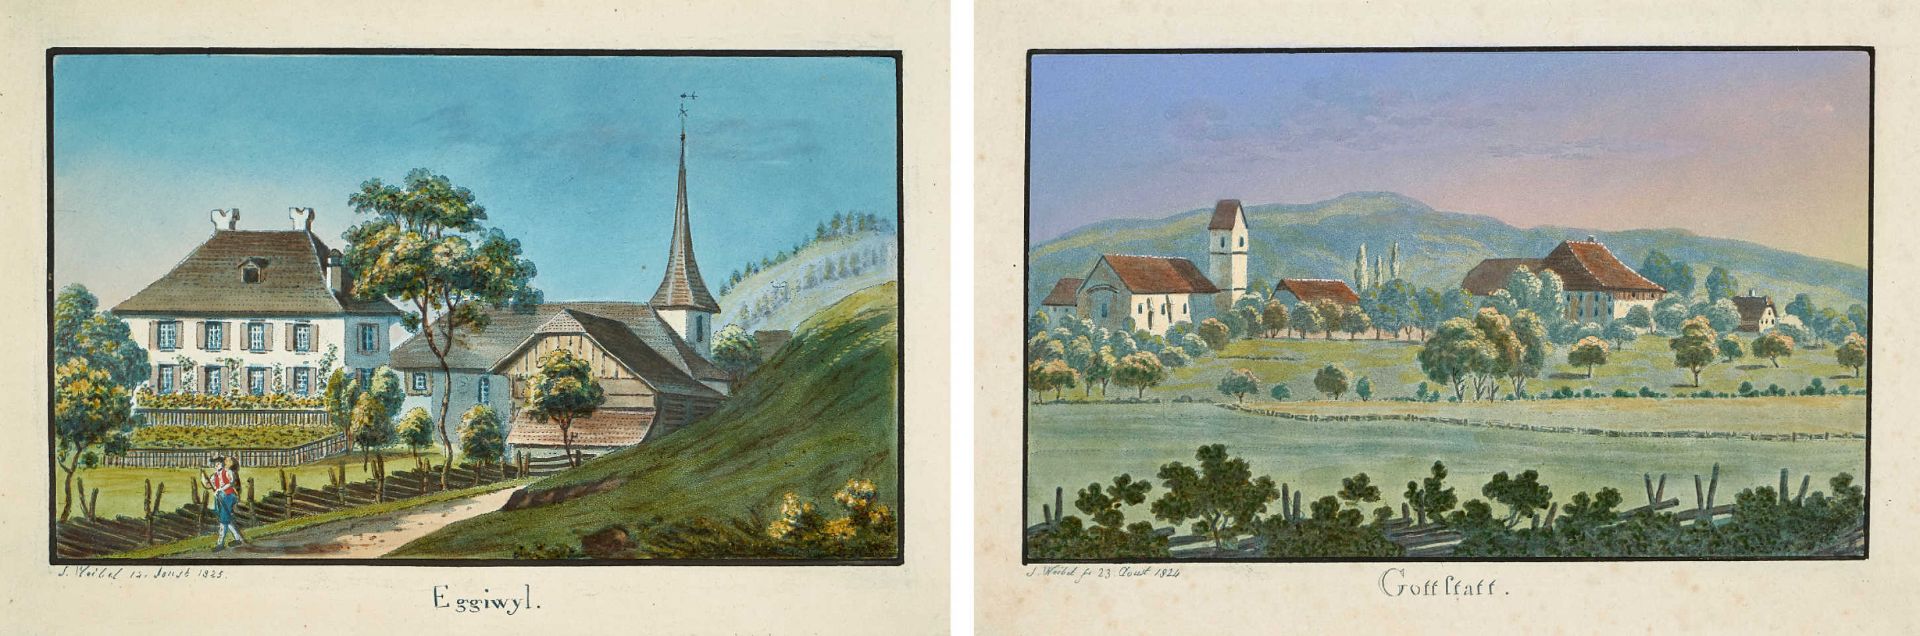 WEIBEL, JAKOB SAMUEL1771 Bern 1846Konvolut.2 Blätter aus "Bernische Landpfarrhäuser": 1. "